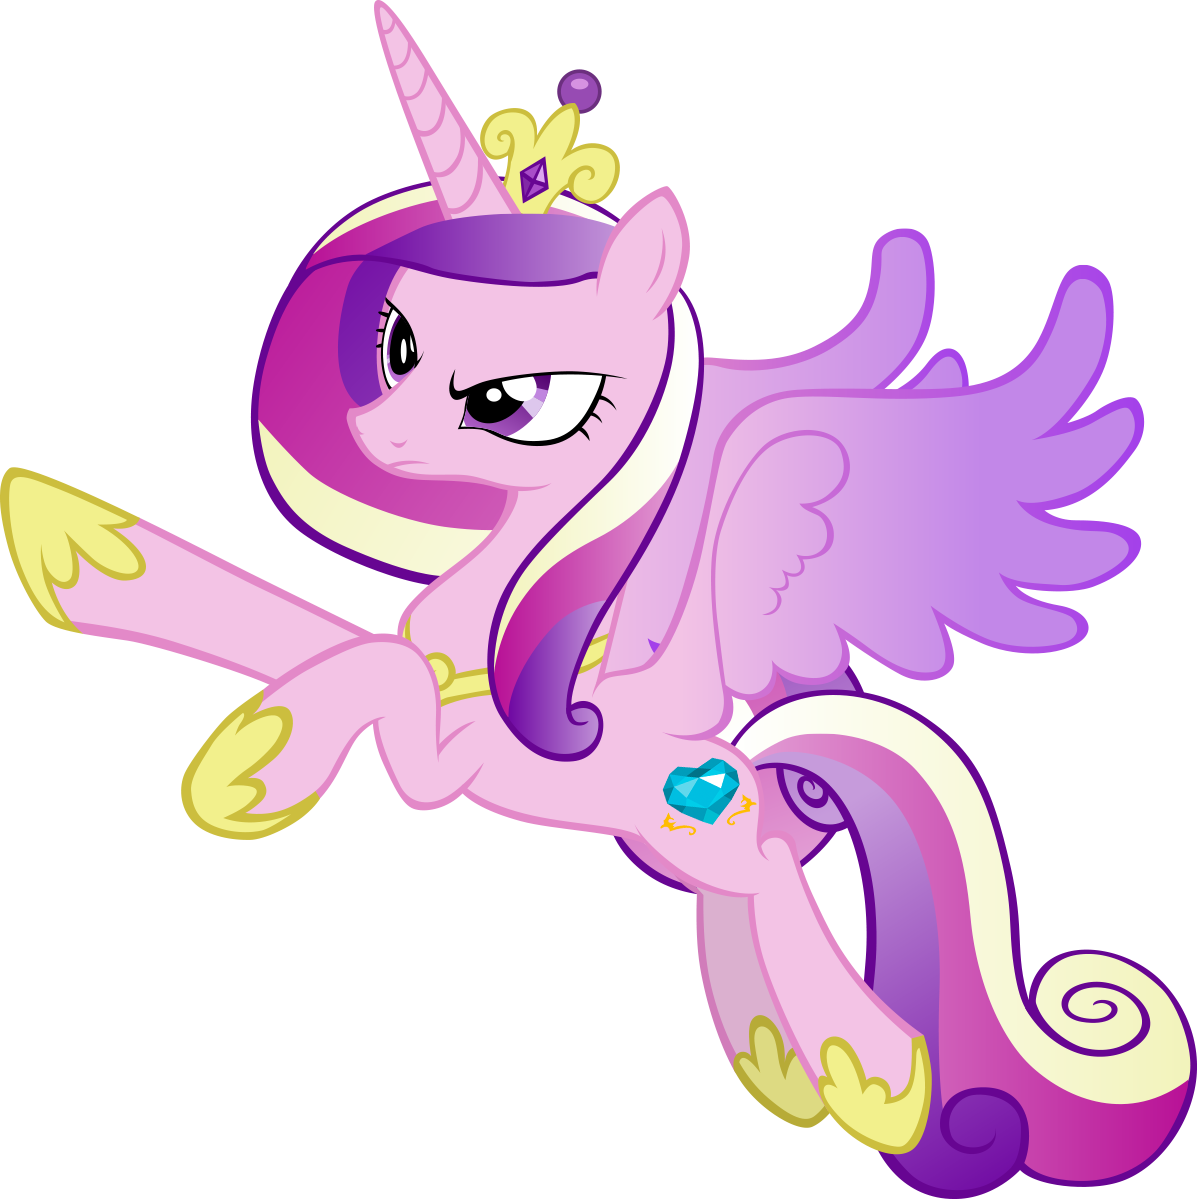 My little Pony Каденс. My little Pony принцесса Каденс. МЛП принцесса Каденс. Принцесса Кейденс маленькая пони.